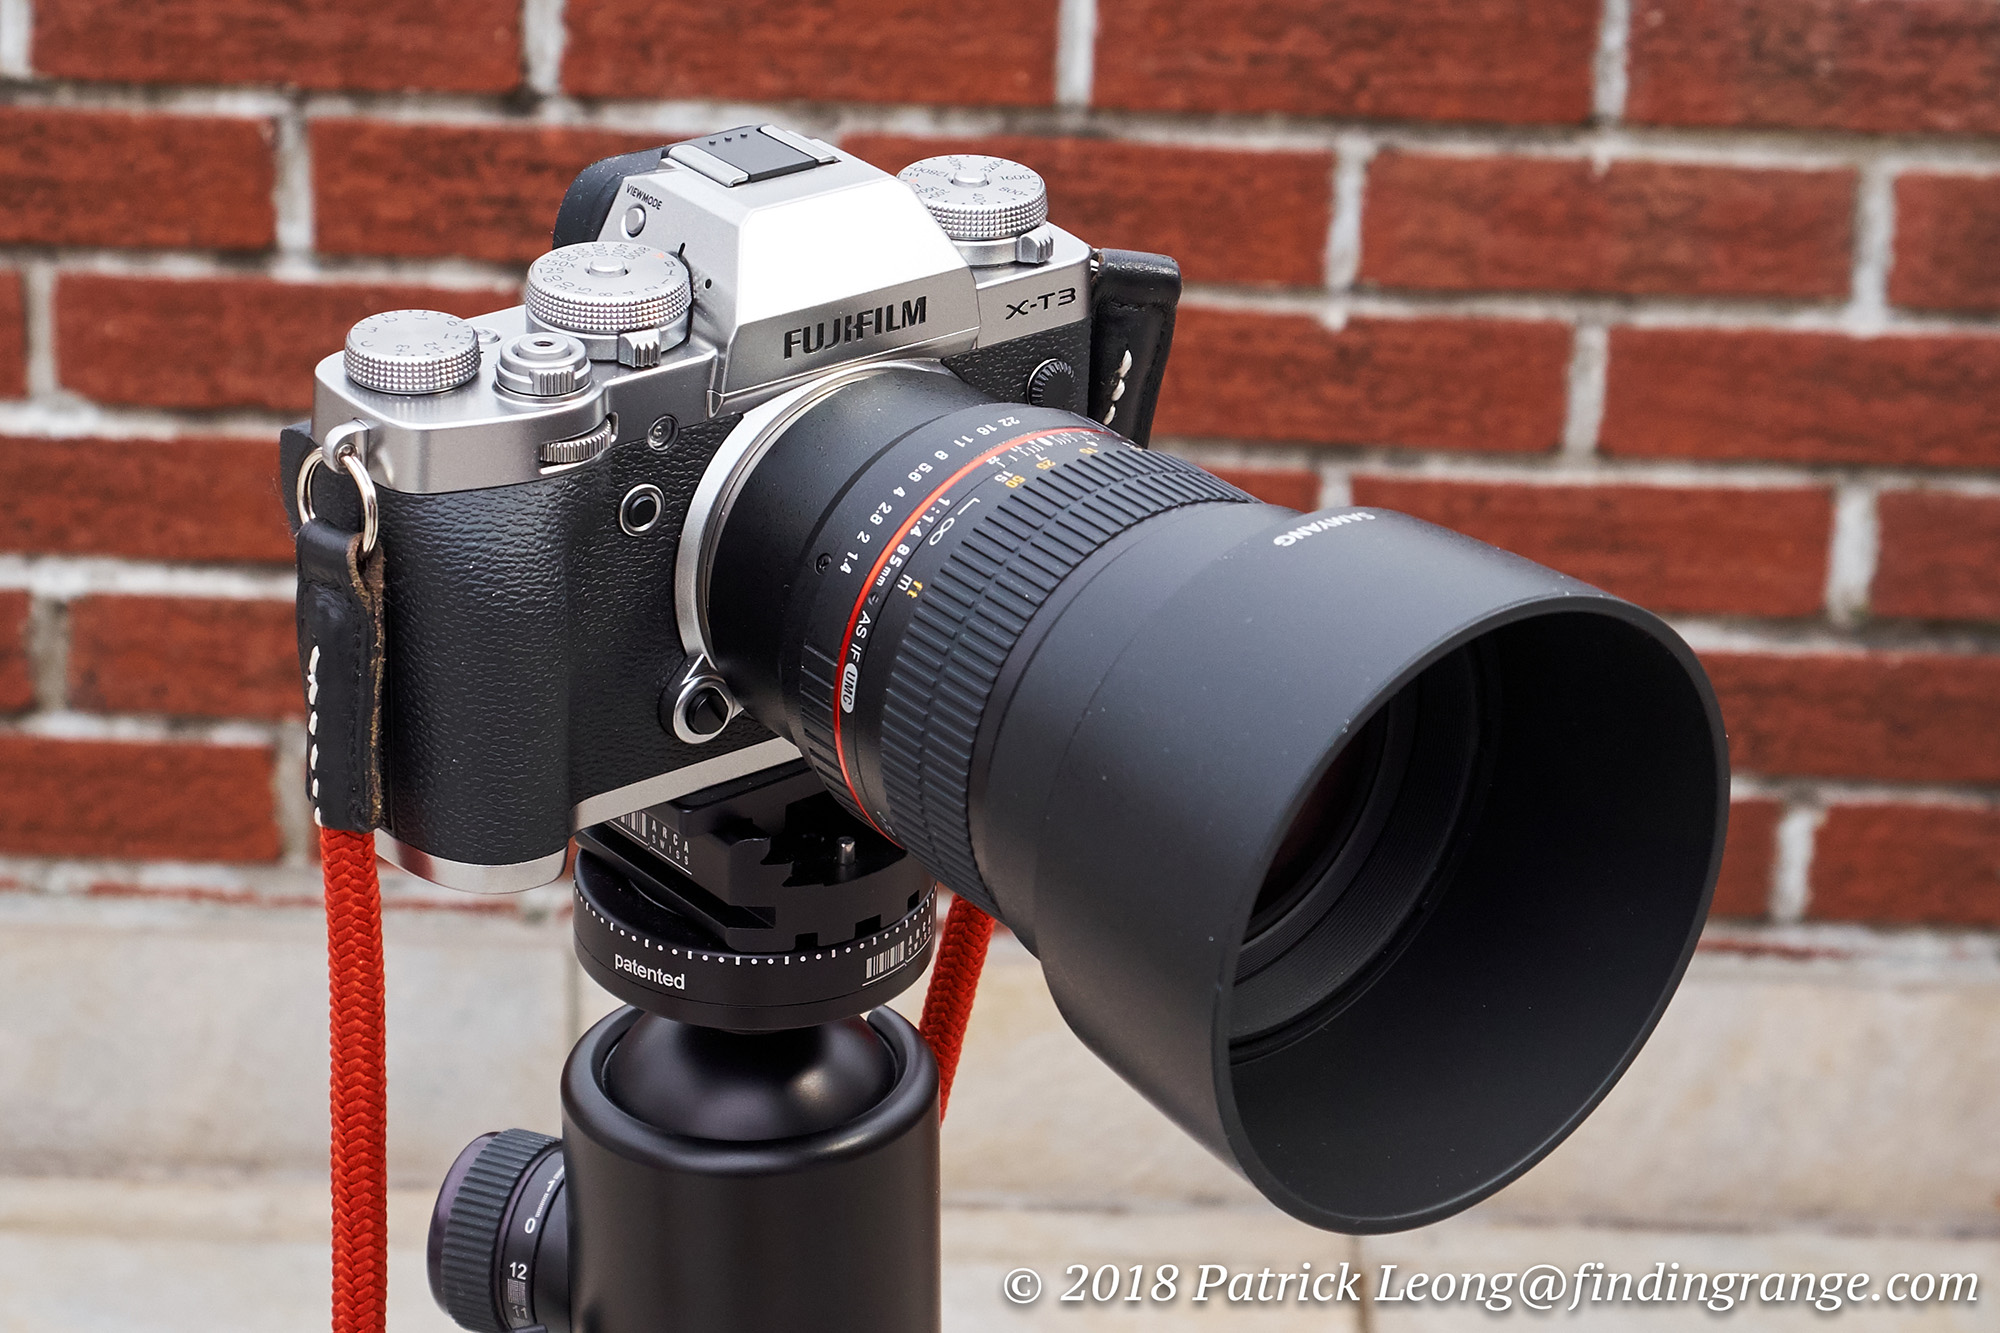 Zeestraat oneerlijk mengen Samyang 85mm f1.4 Aspherical IF Lens Review Fuji X